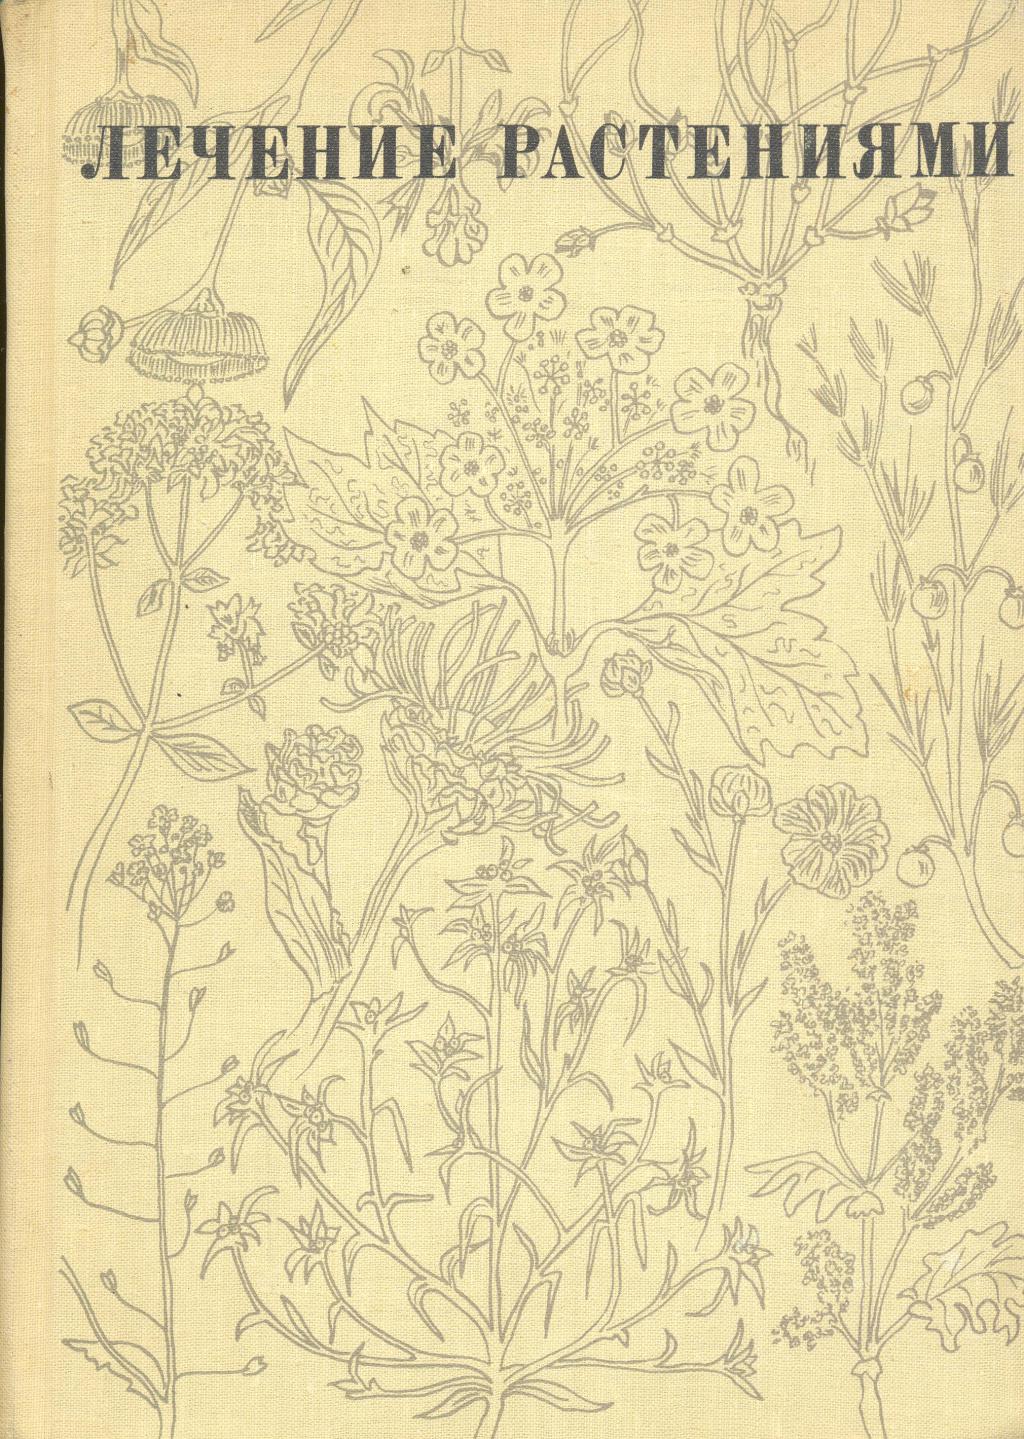 Купить книгу лечение. Н.Г.ковалёвой "лечение растениями" (1971 г.). Ковалёва н.г. лечение растениями 1972.